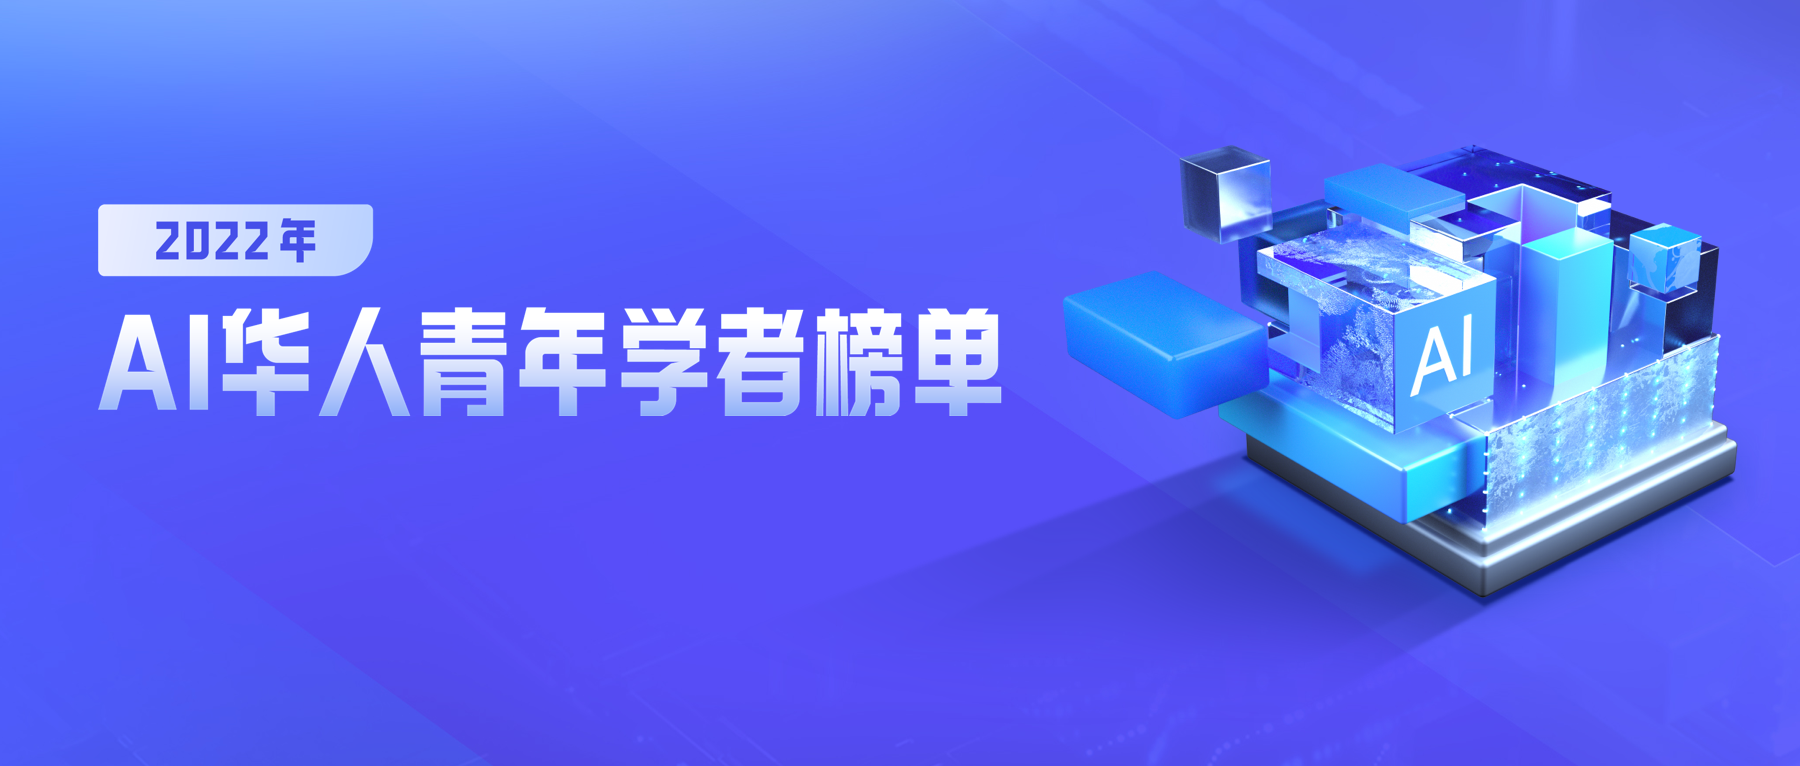 重磅 | 百度发布全球首份高潜力AI华人青年学者榜单